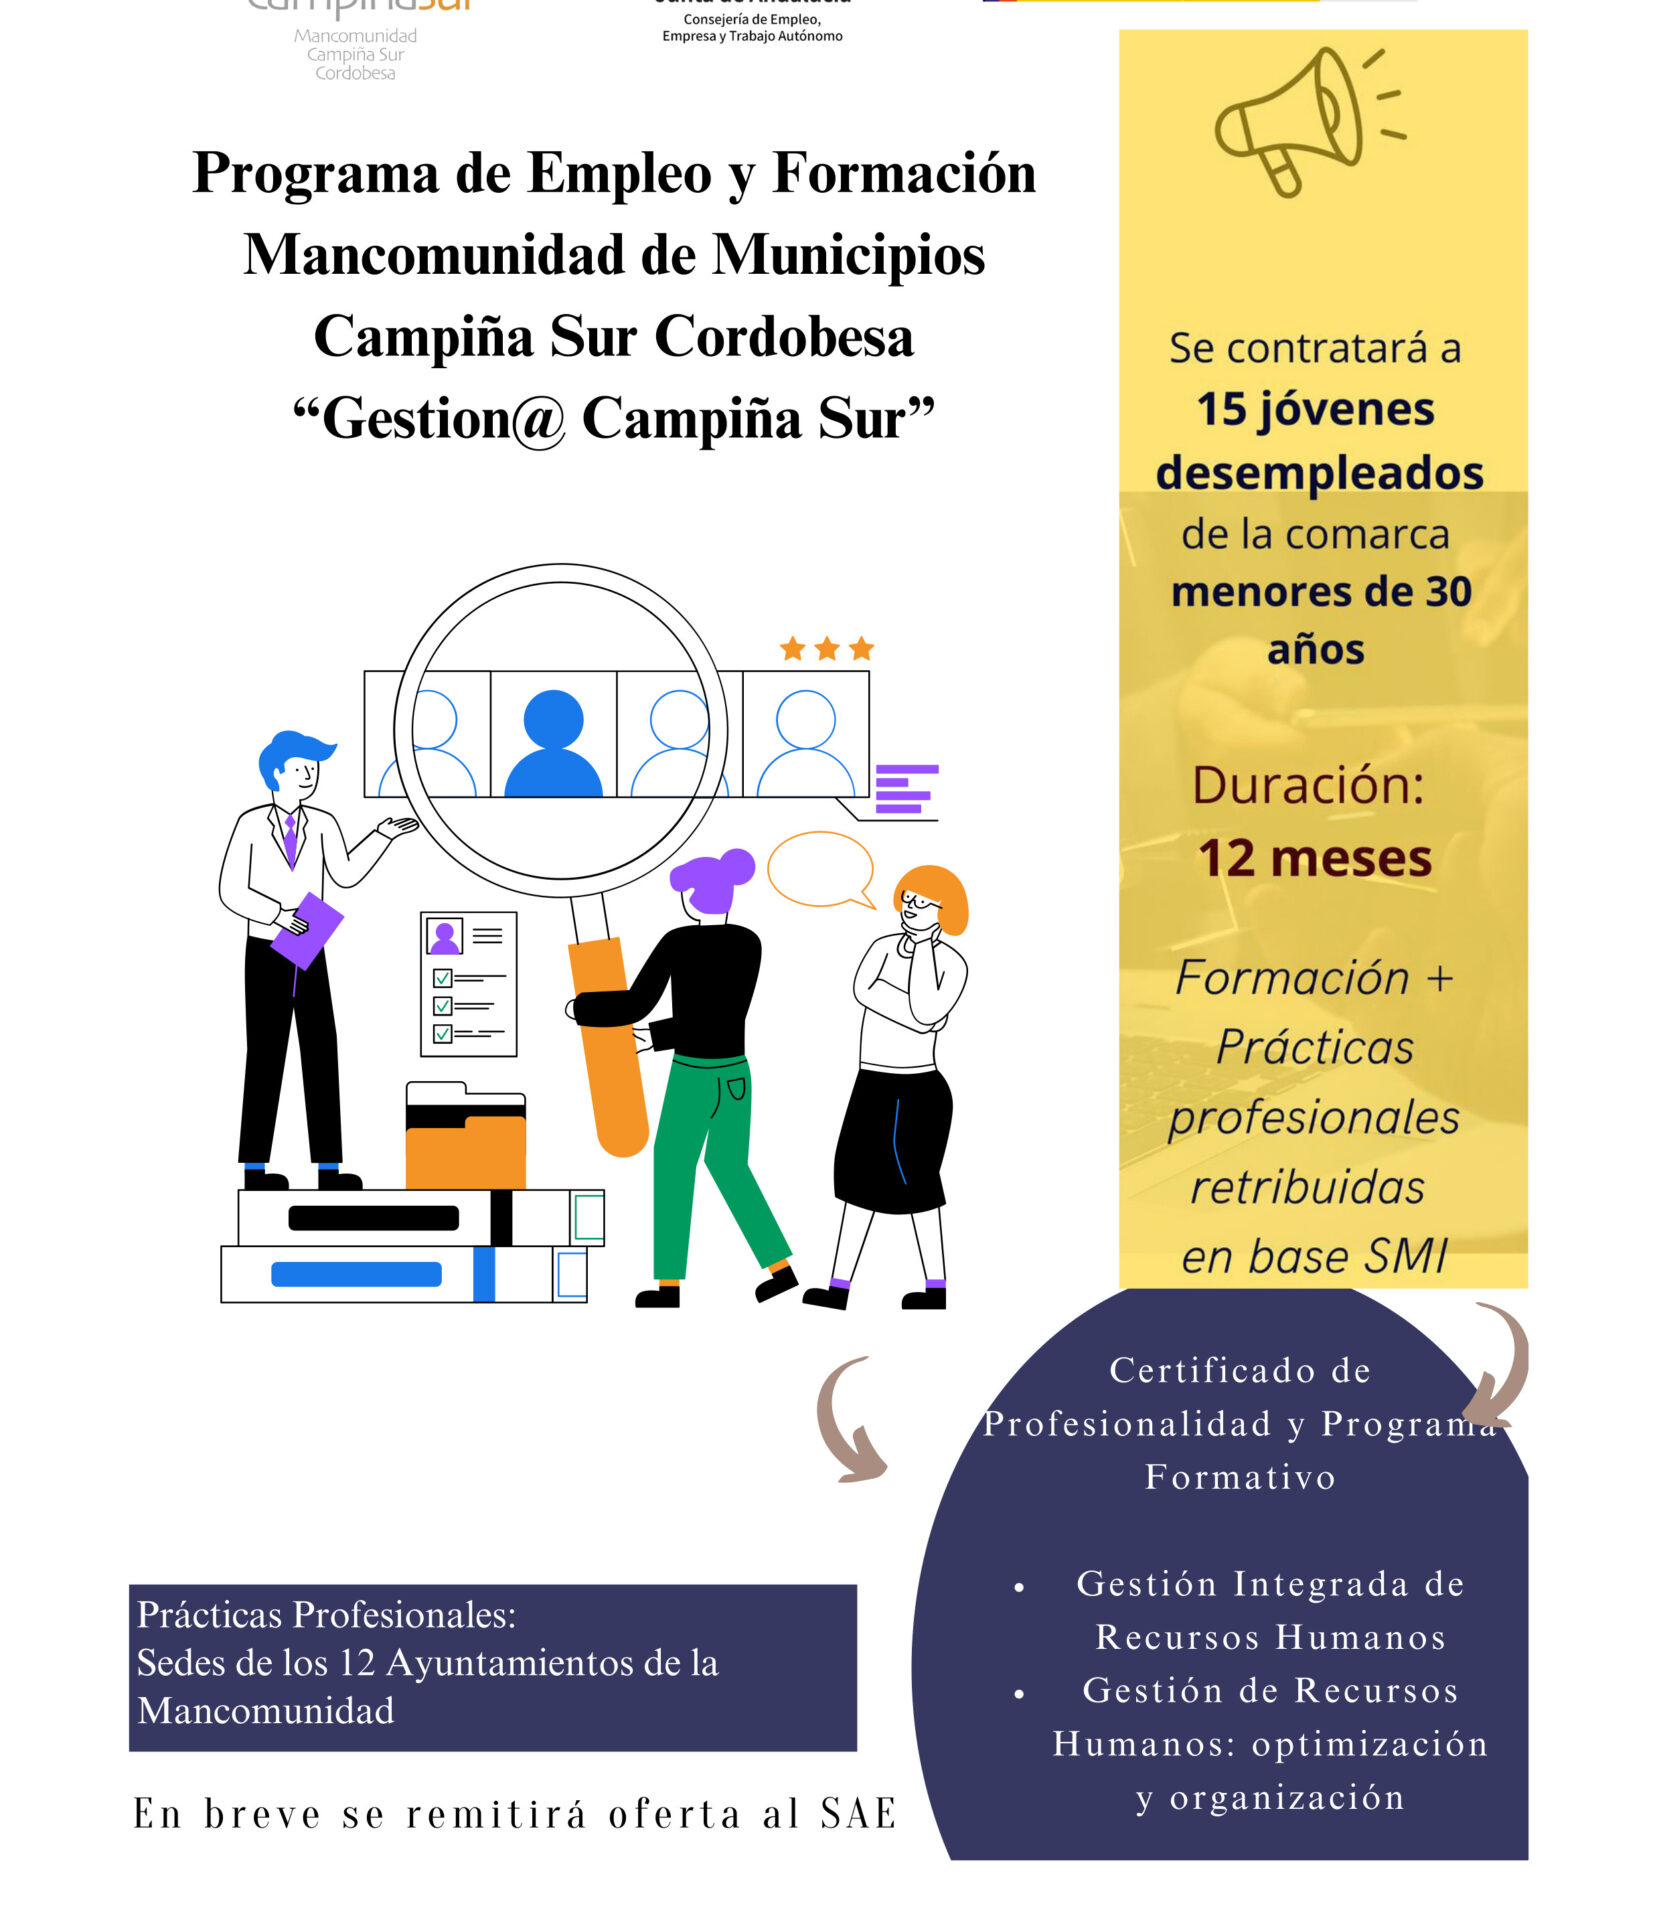 La Mancomunidad de Municipios Campiña Sur Cordobesa lanza programas de empleo y formación para contratar a 30 jóvenes desempleados.